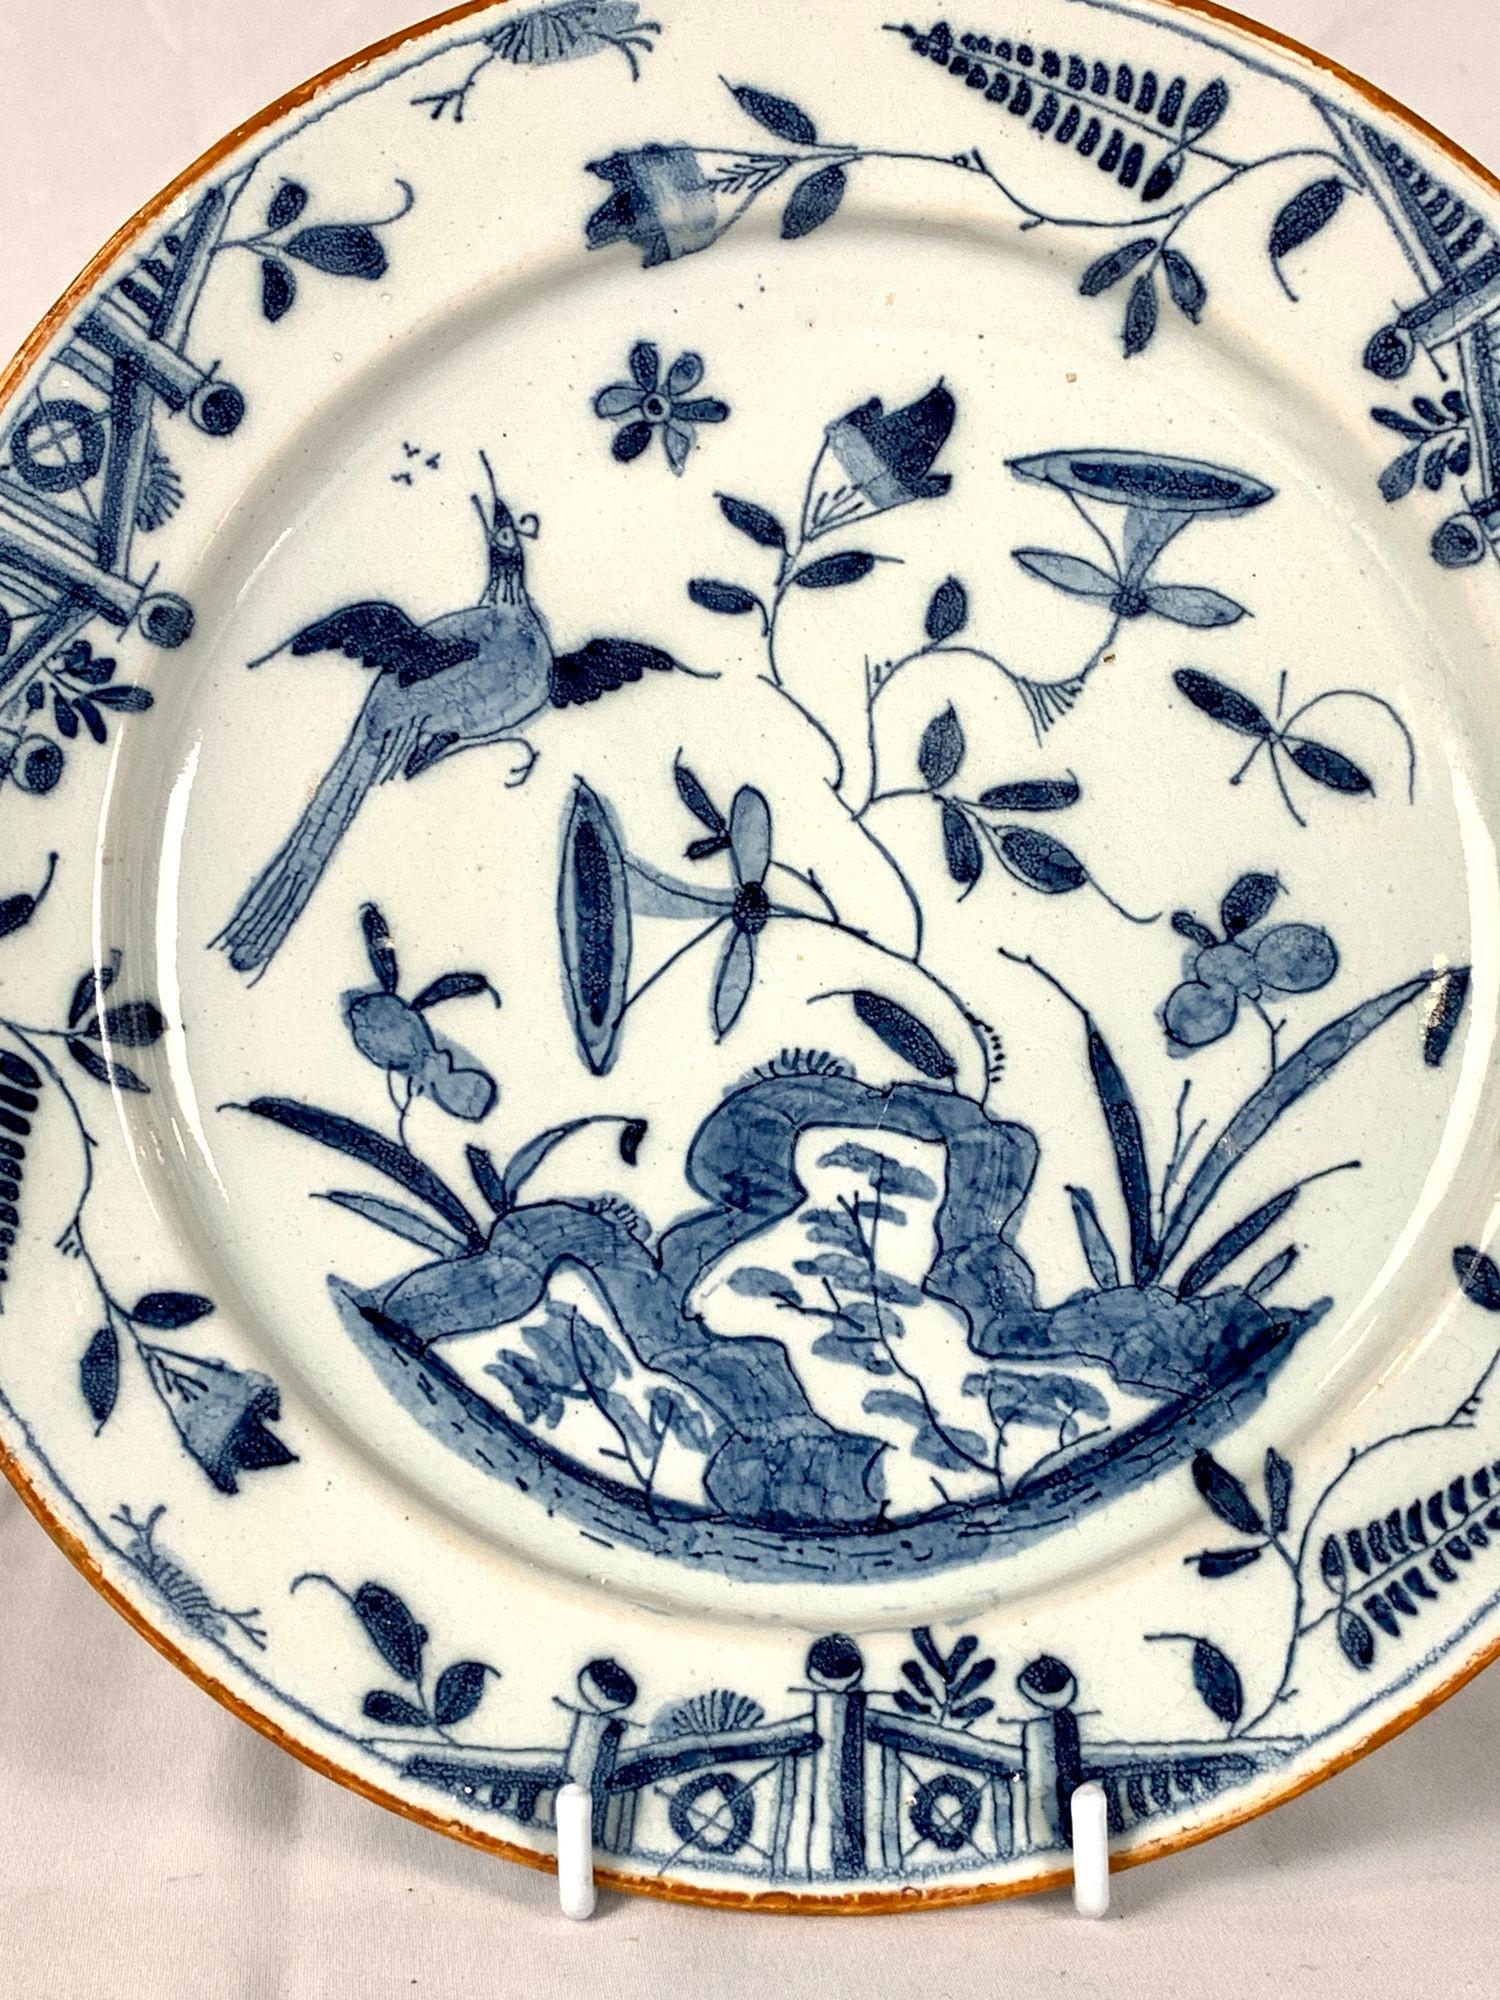 Ce magnifique plat en faïence bleu et blanc a été peint à la main en Angleterre vers 1760.
Il représente une scène de jardin animée avec, d'un côté, un papillon planant et, de l'autre, un oiseau chanteur en vol, la tête inclinée vers le haut en